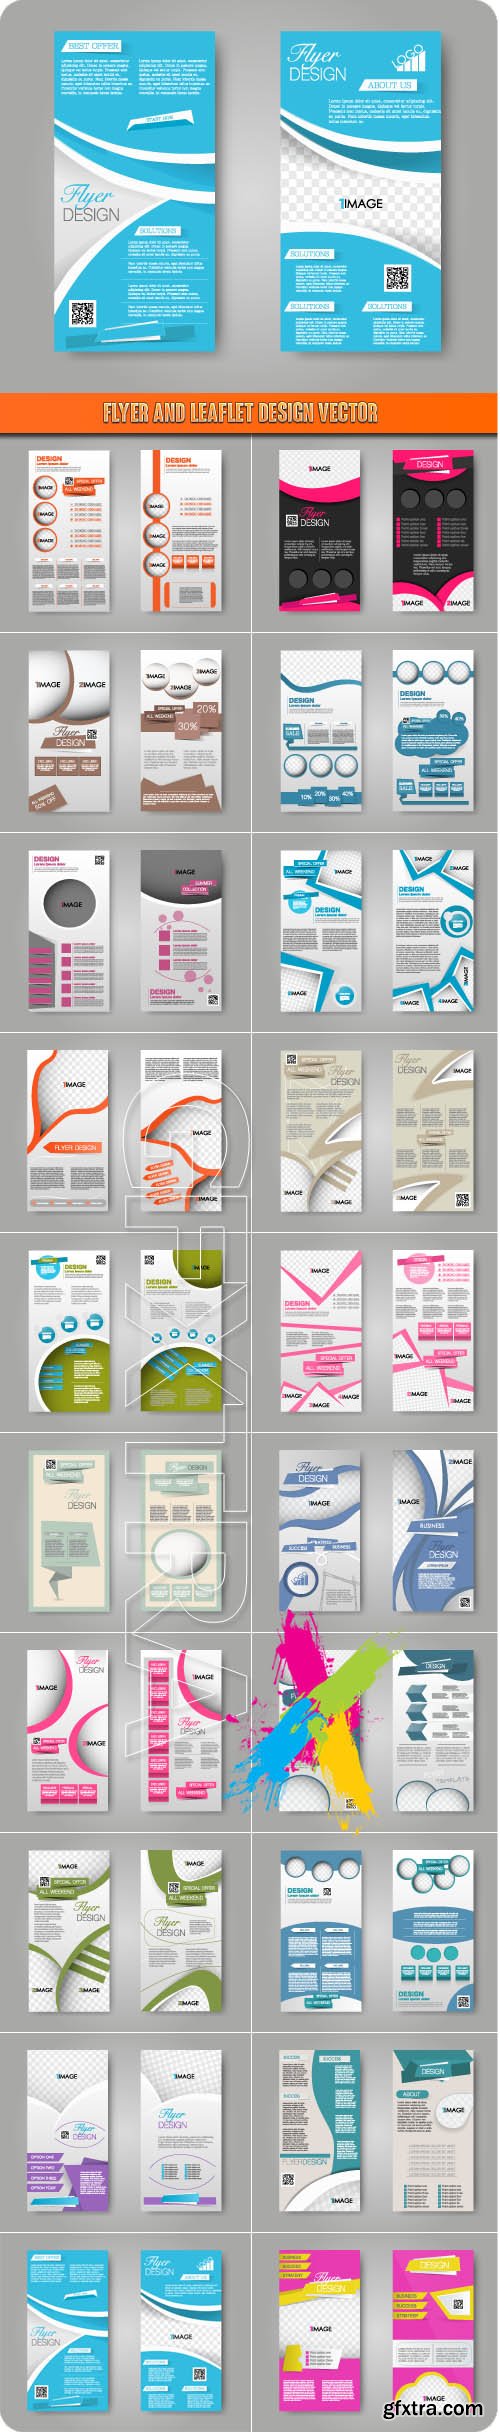 Flyer and leaflet design vector